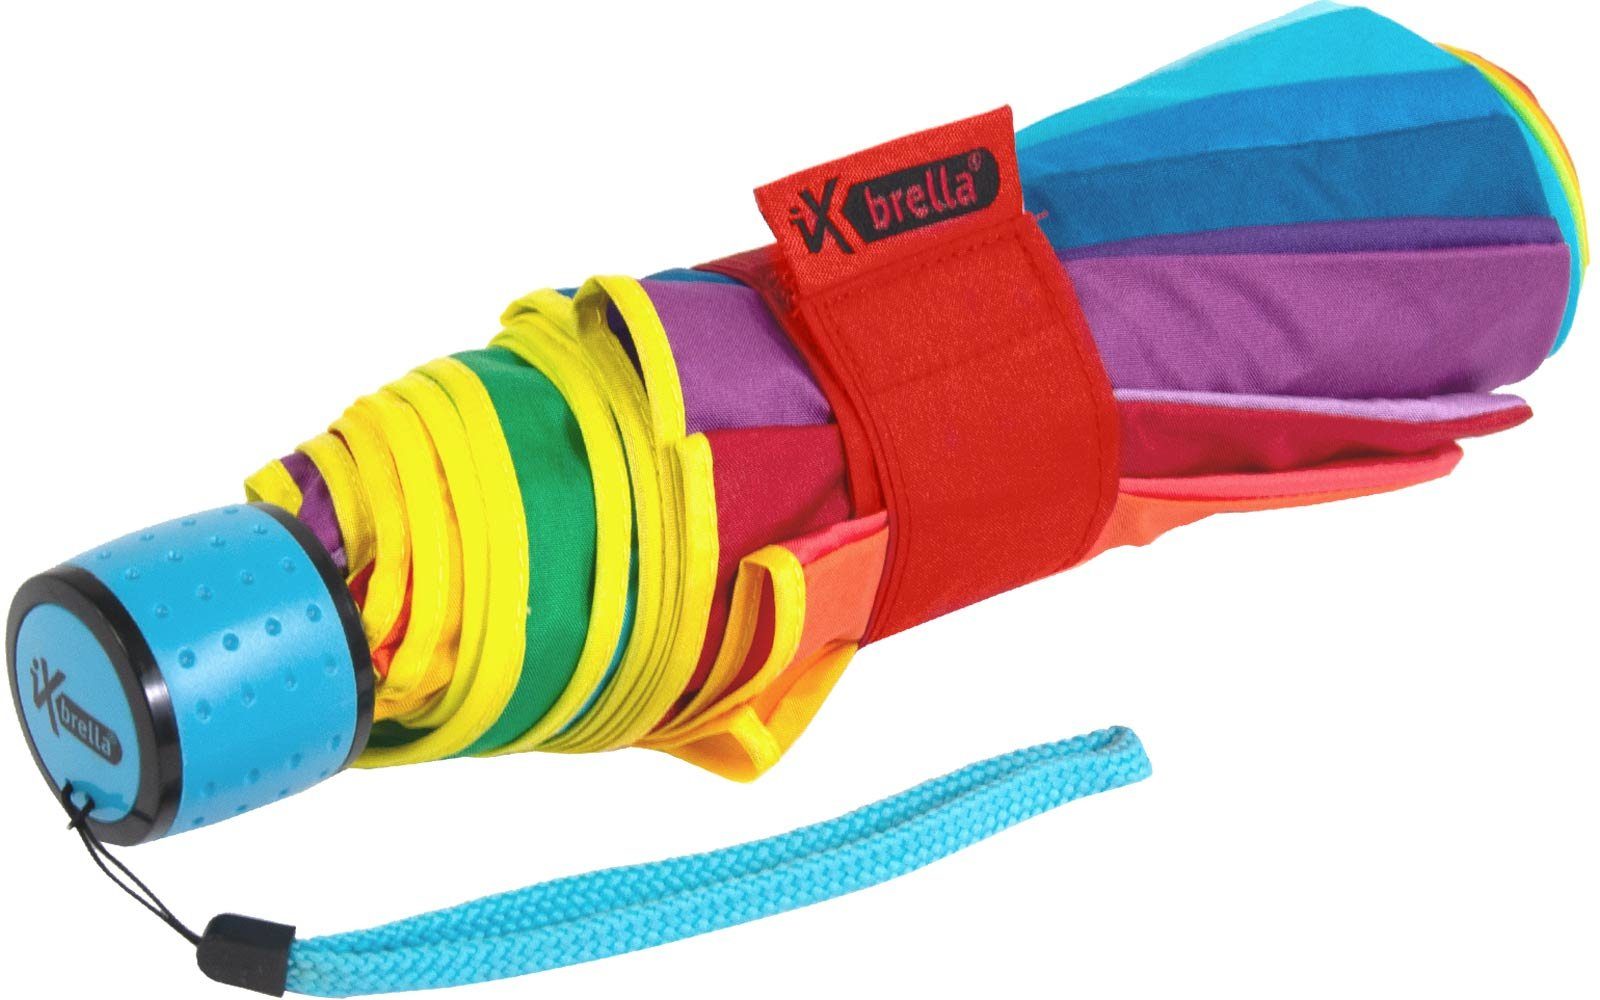 Taschenregenschirm - rainbow farbenfroh 16 farbig, iX-brella 16-color pocket iX-brella kleiner Taschenschirm